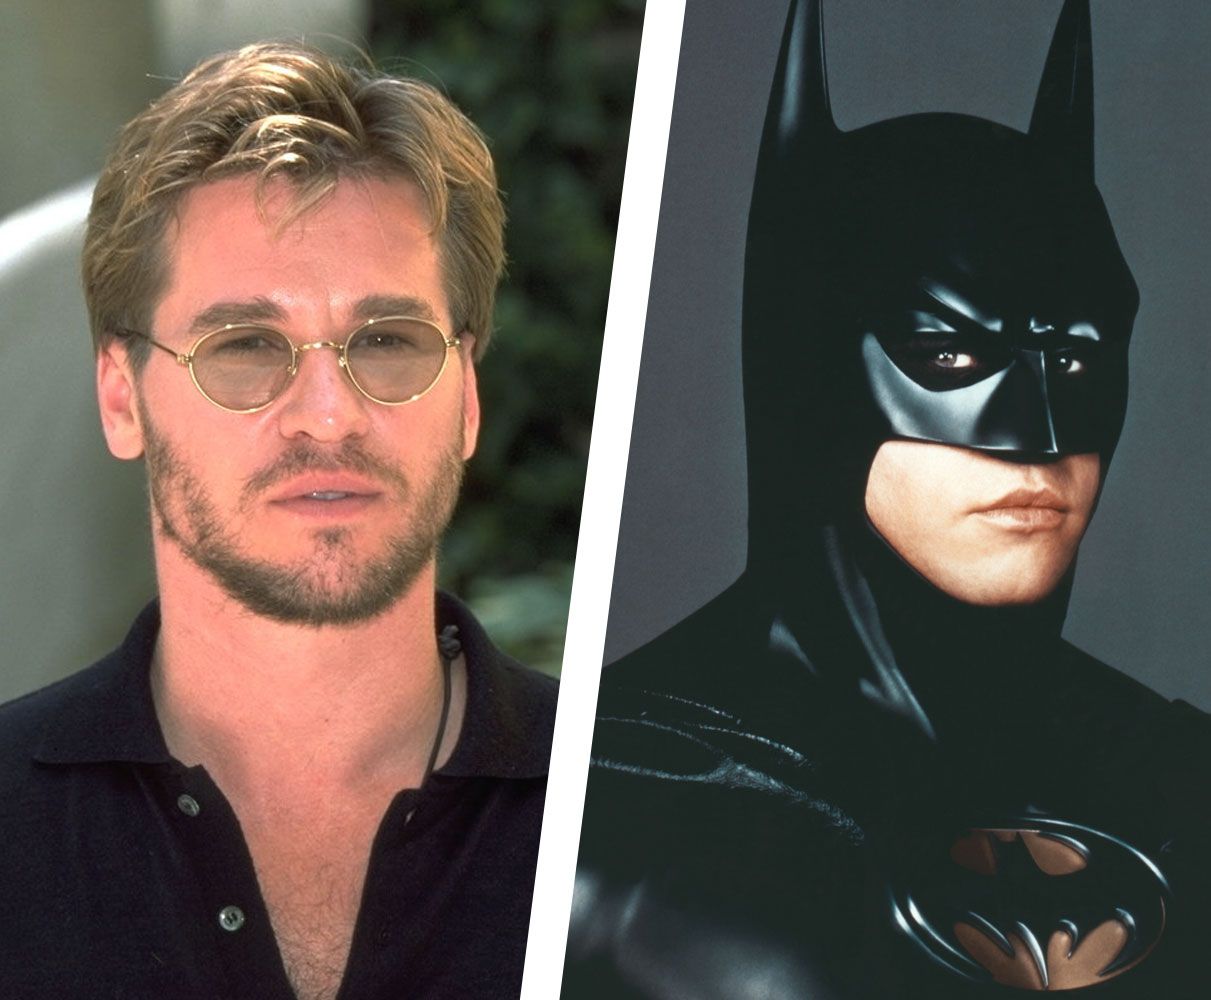 Who Has Played Batman? — Batman Actors List